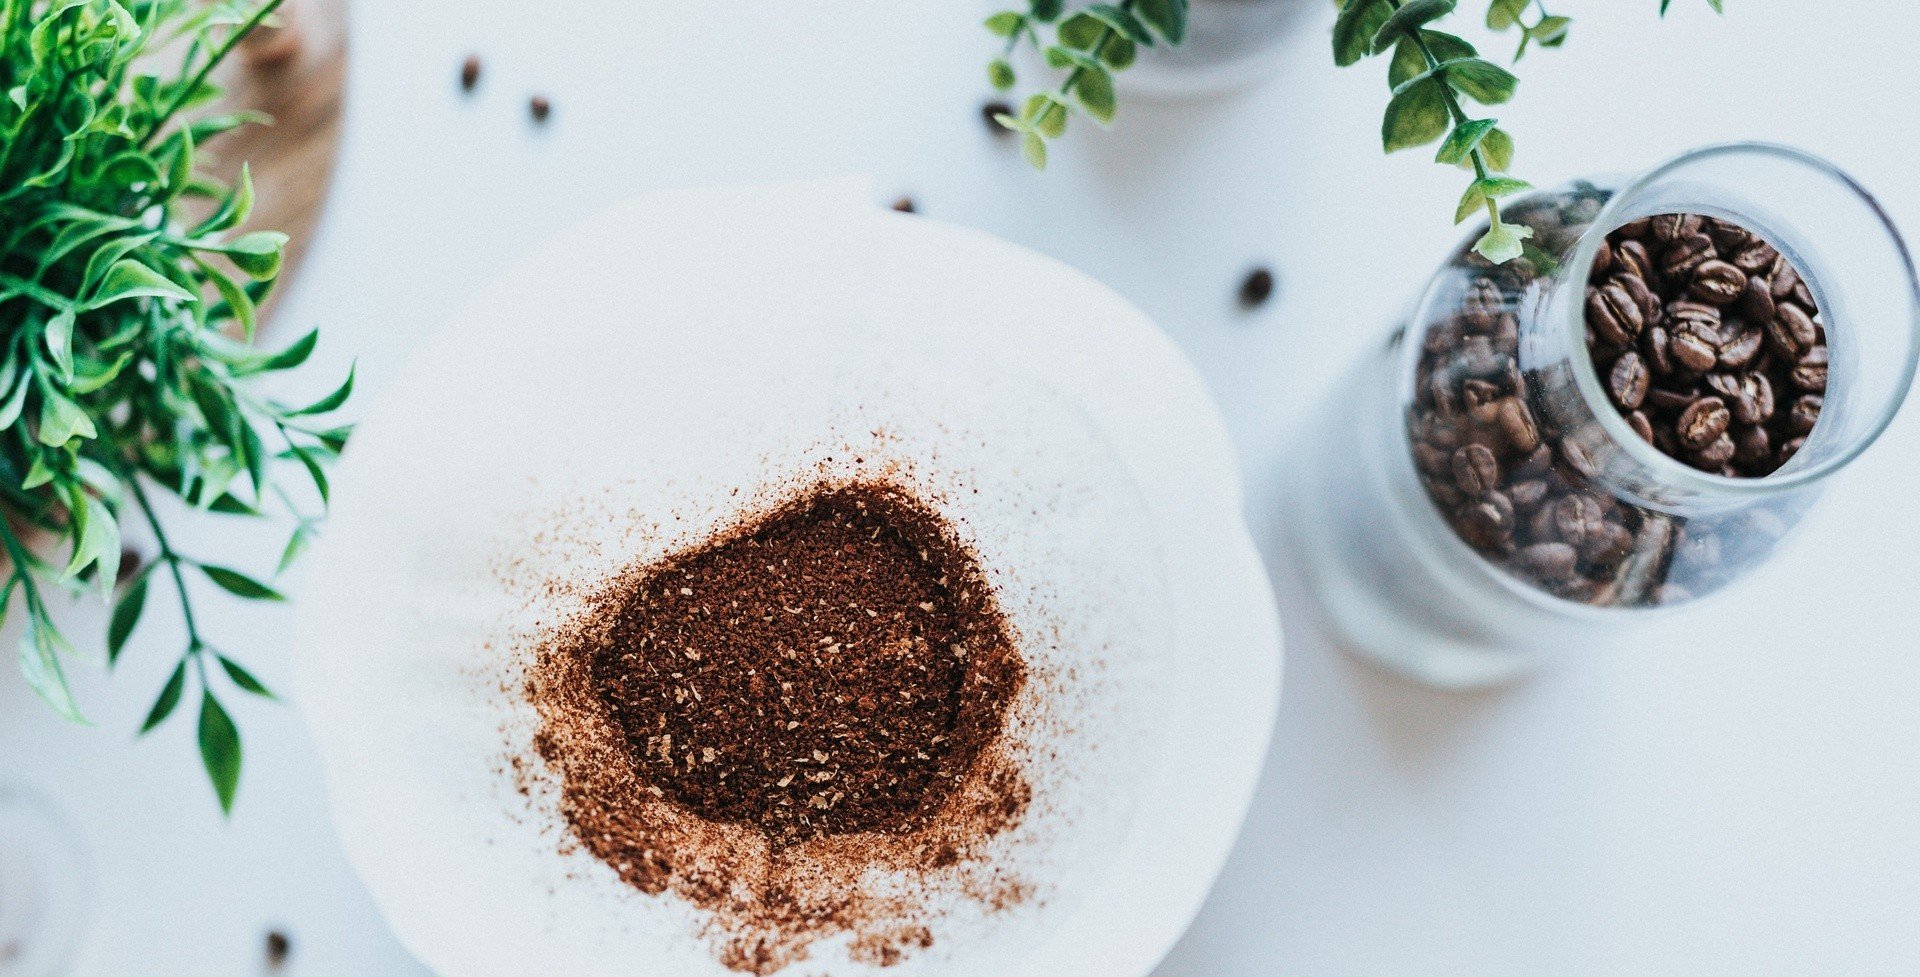 Nie wyrzucaj do kosza fusów z kawy. Przetestuj genialne domowe triki z  czarną kawą. Sprawdź, jak ponownie wykorzystać fusy z kawy w domu | RegioDom